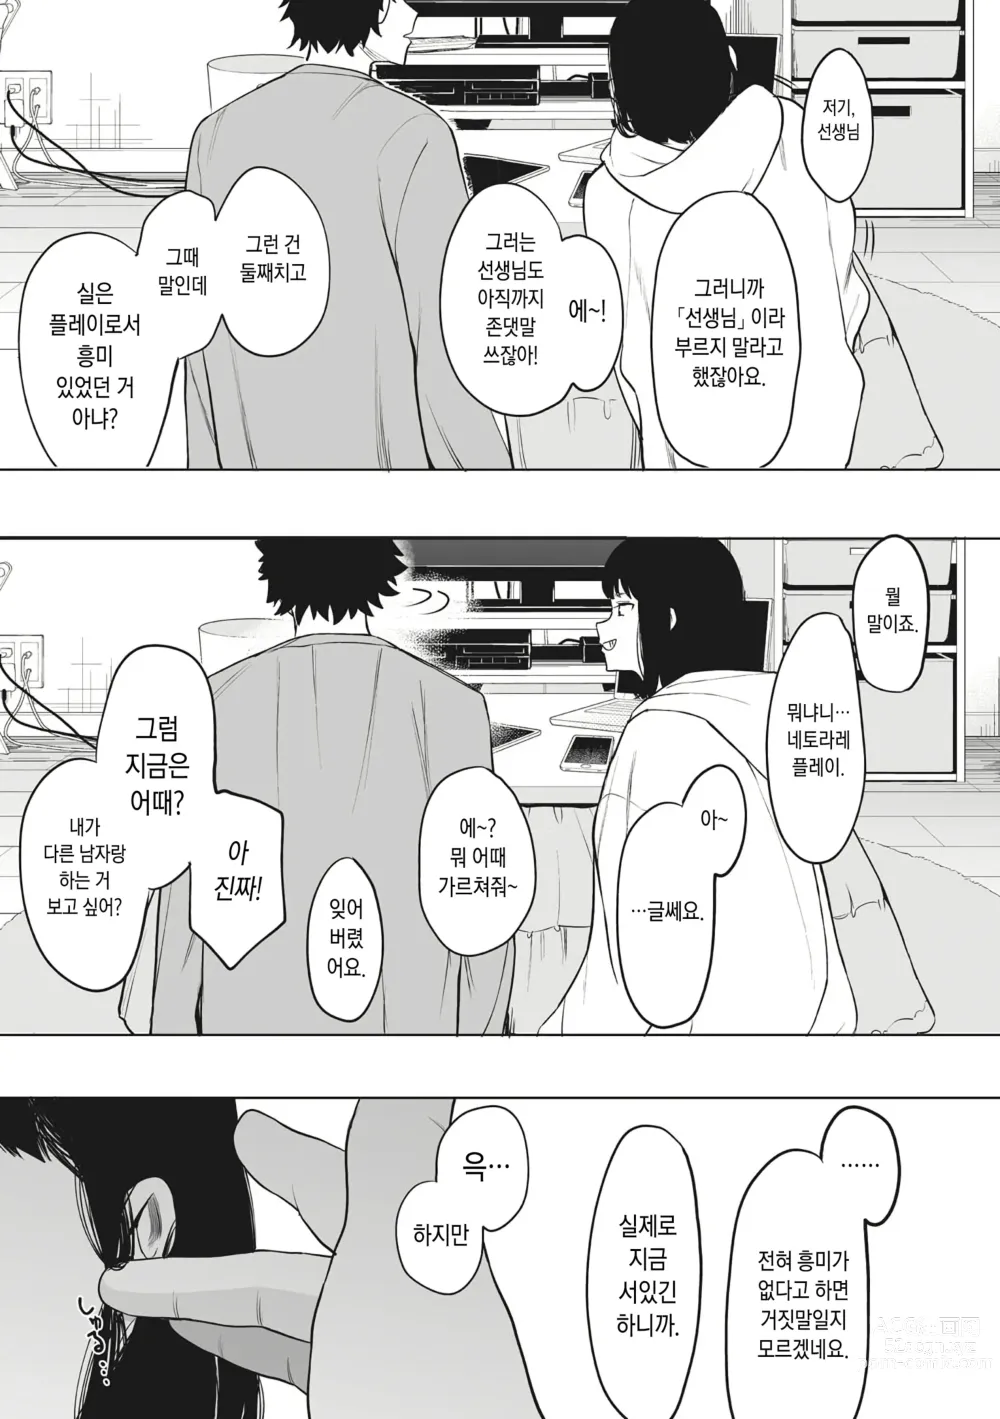 Page 36 of manga Eightman Sensei no Okage de Kanojo ga Dekimashita!